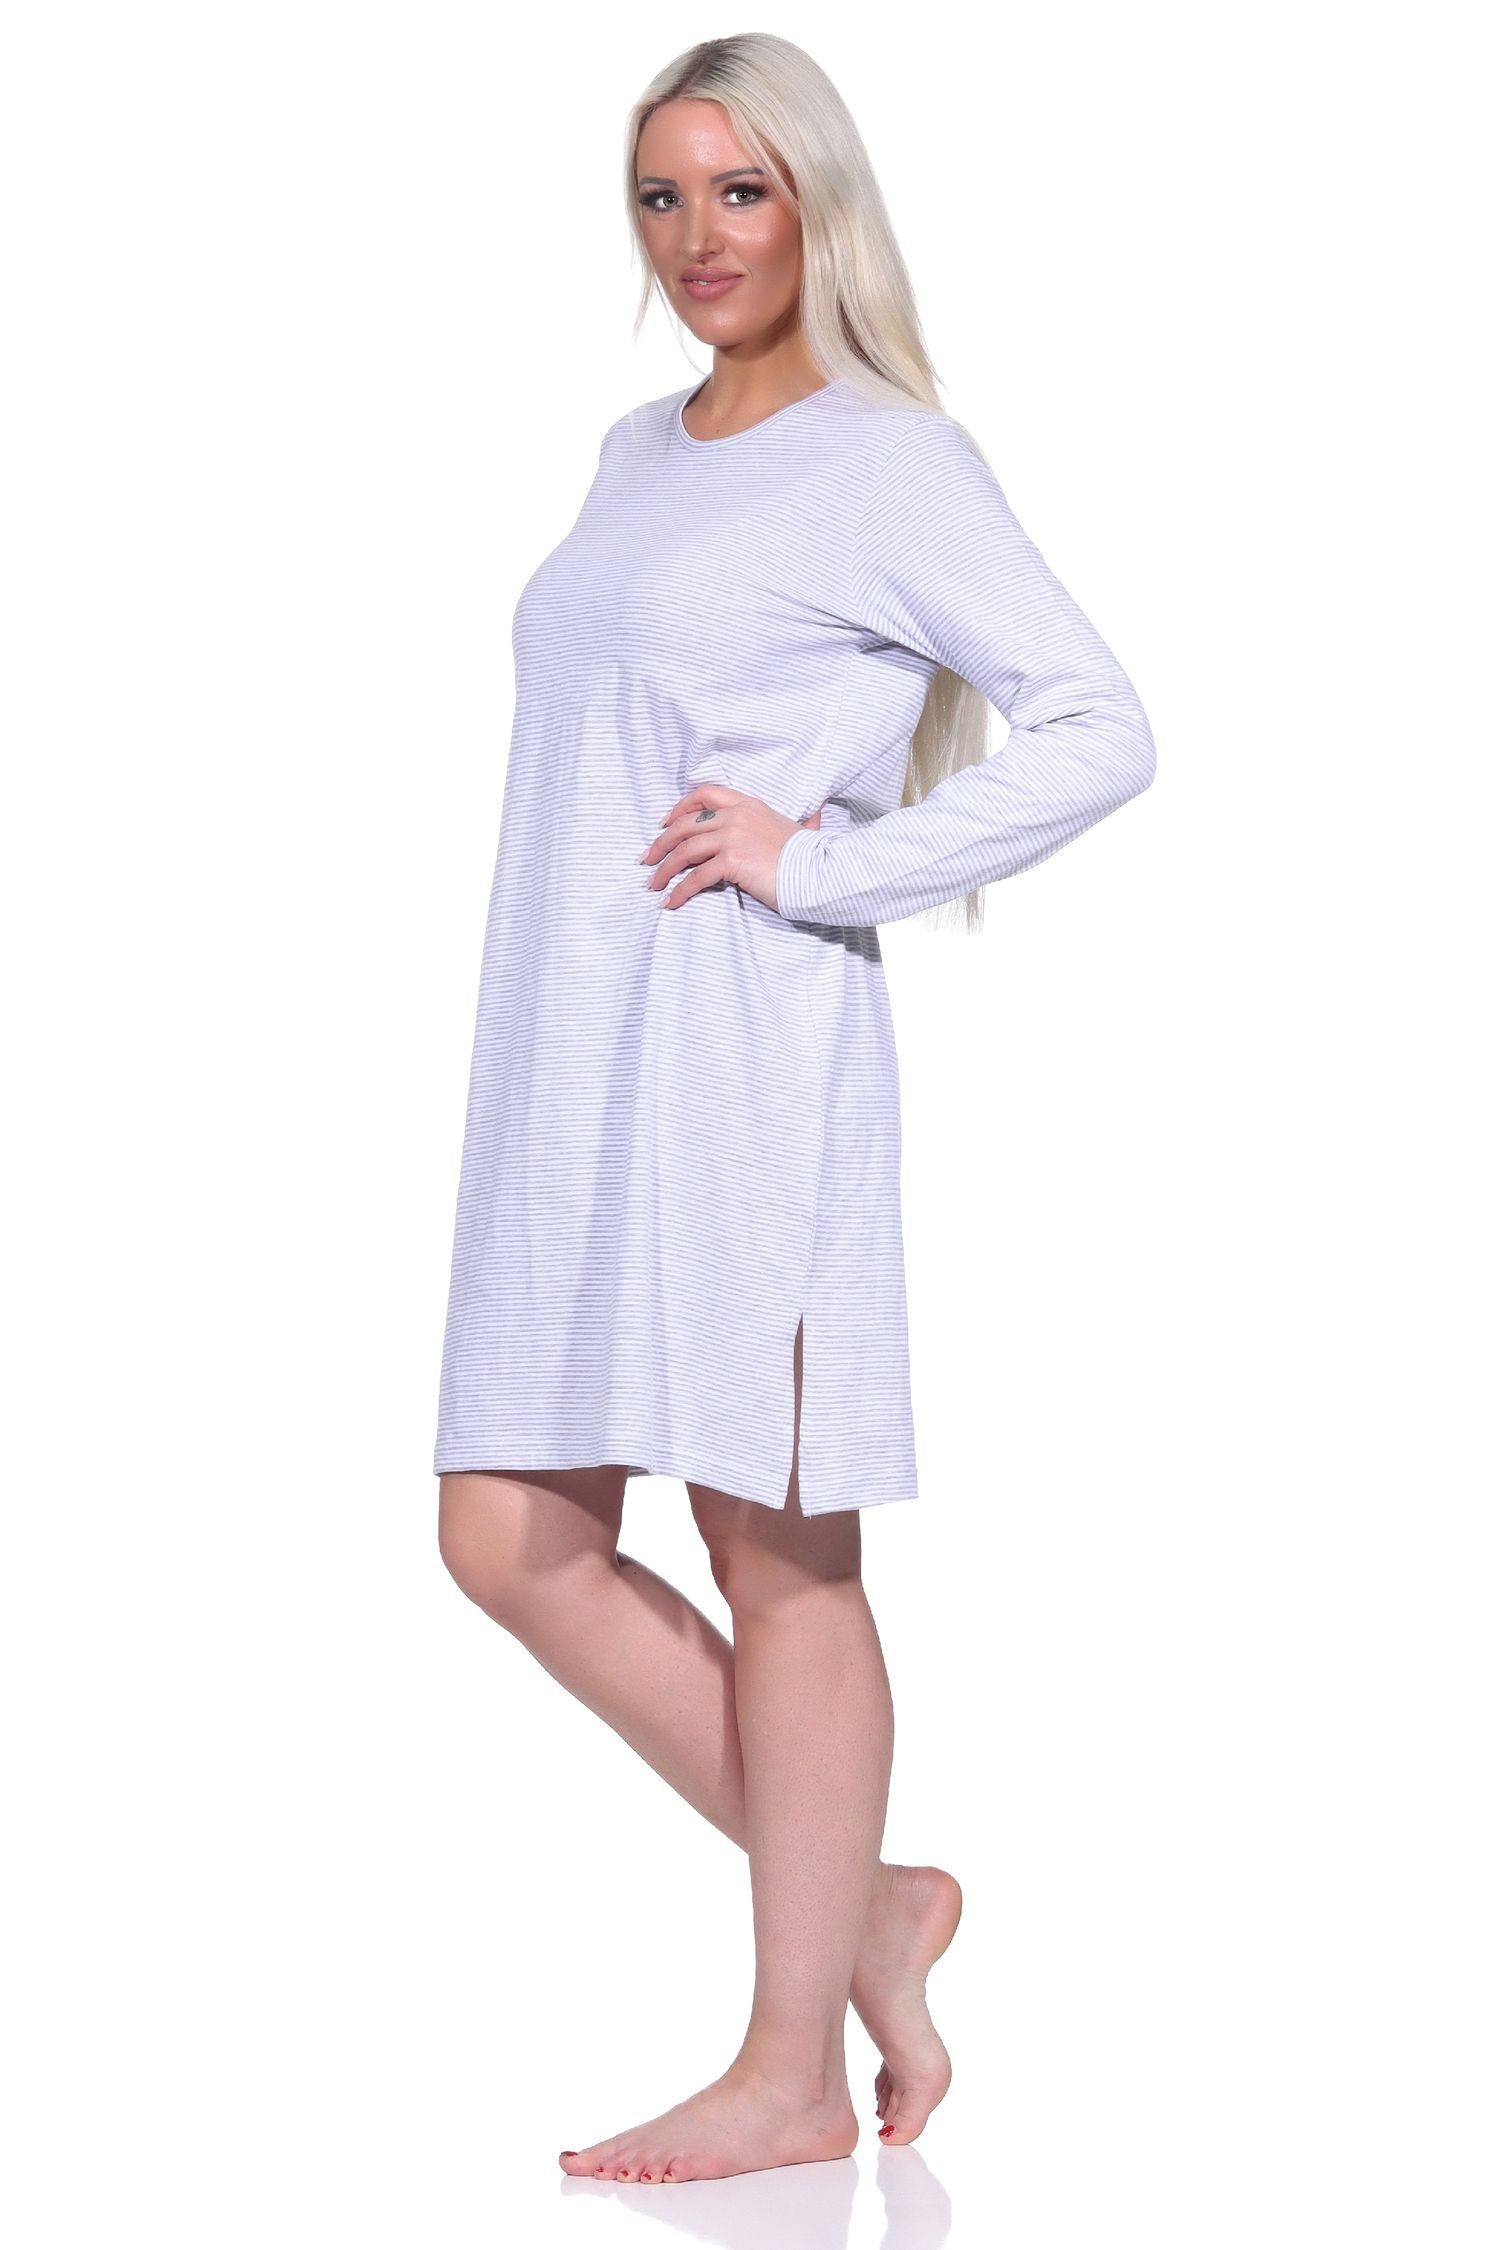 Ringel Normann - grau-melange Nachthemd langarm Nachthemd in Damen Streifen Optik Bigshirt